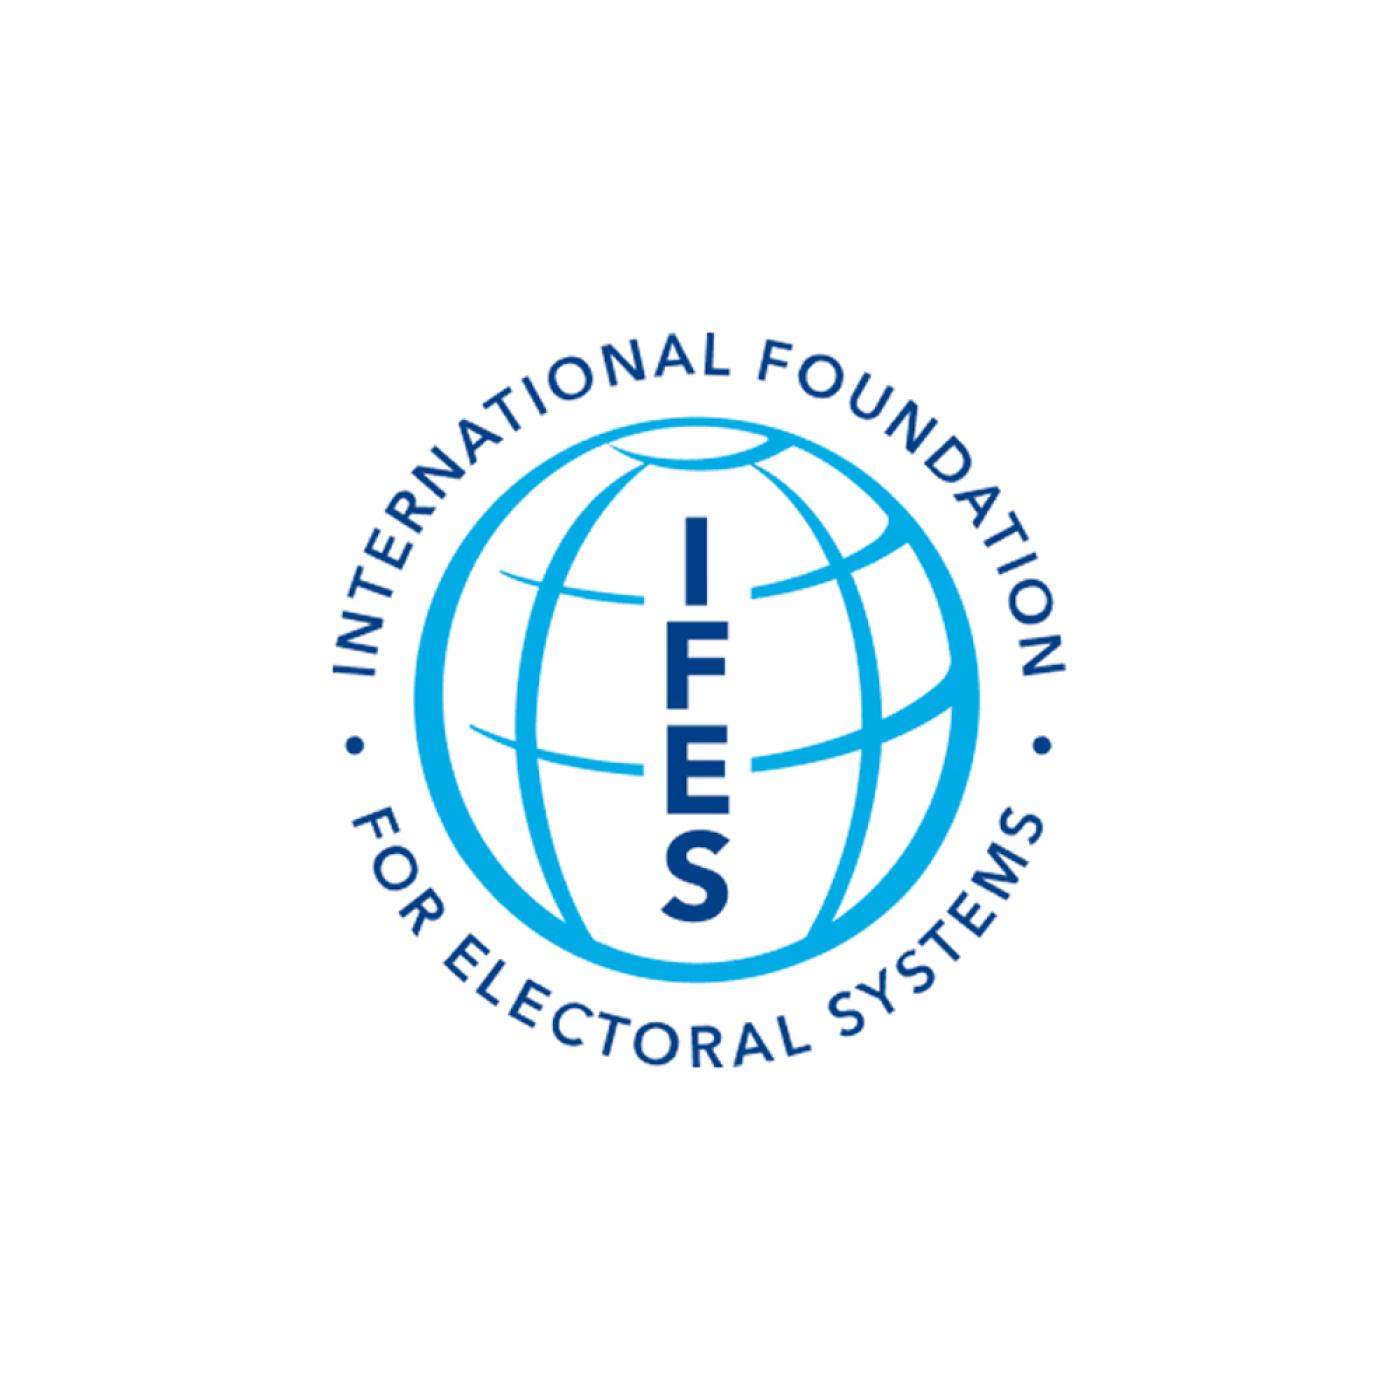 IFES-logo-for-Program-Banner